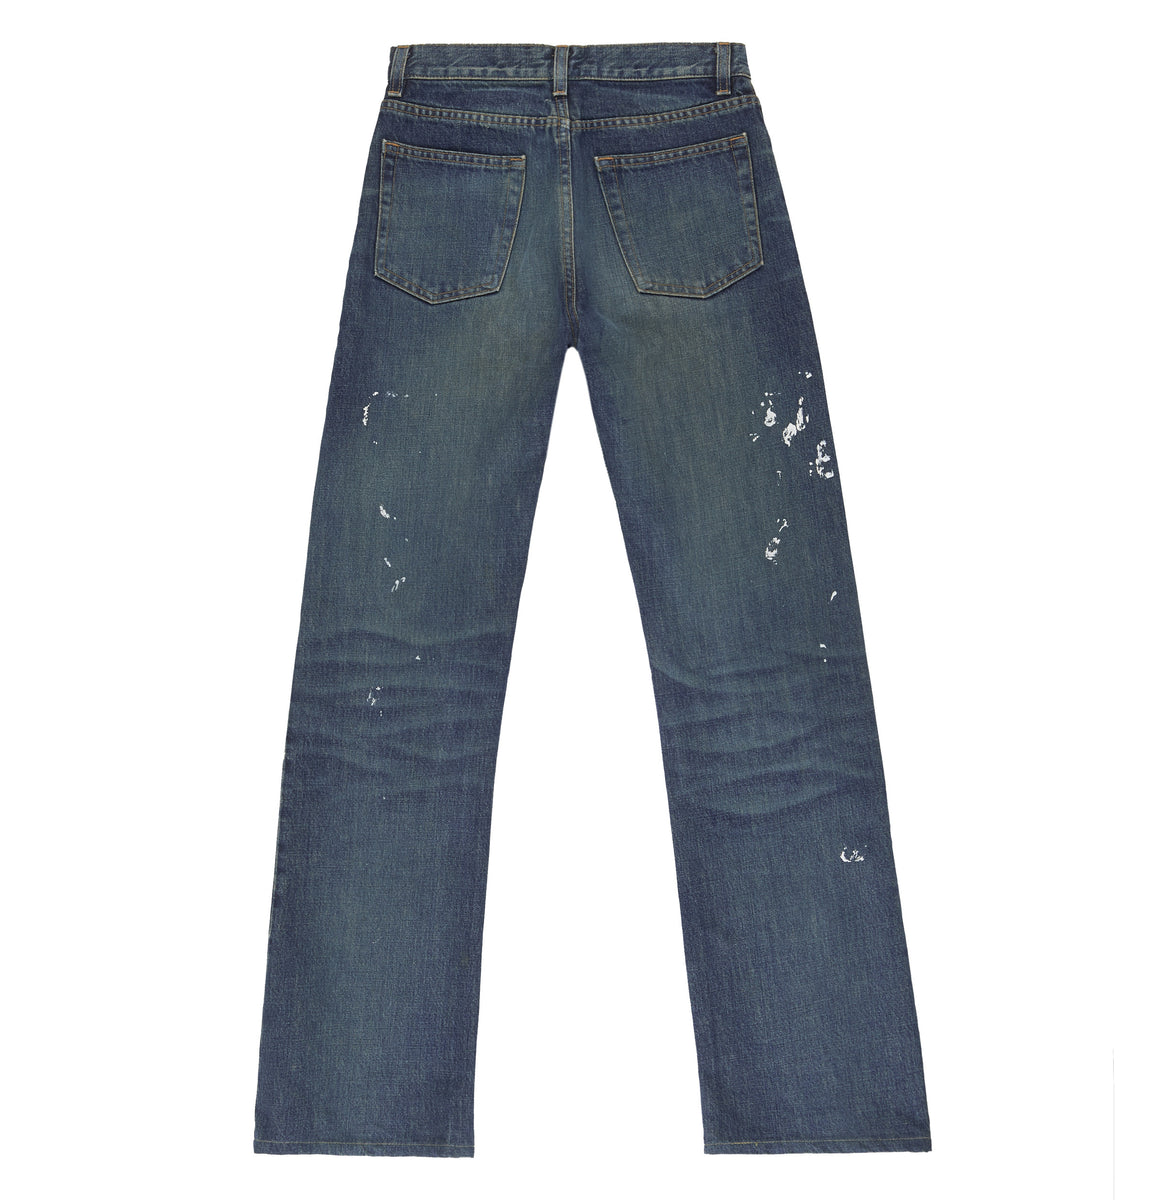 Helmut Lang 2000 Vintage Sanded Denim Painter Jeans – ENDYMA